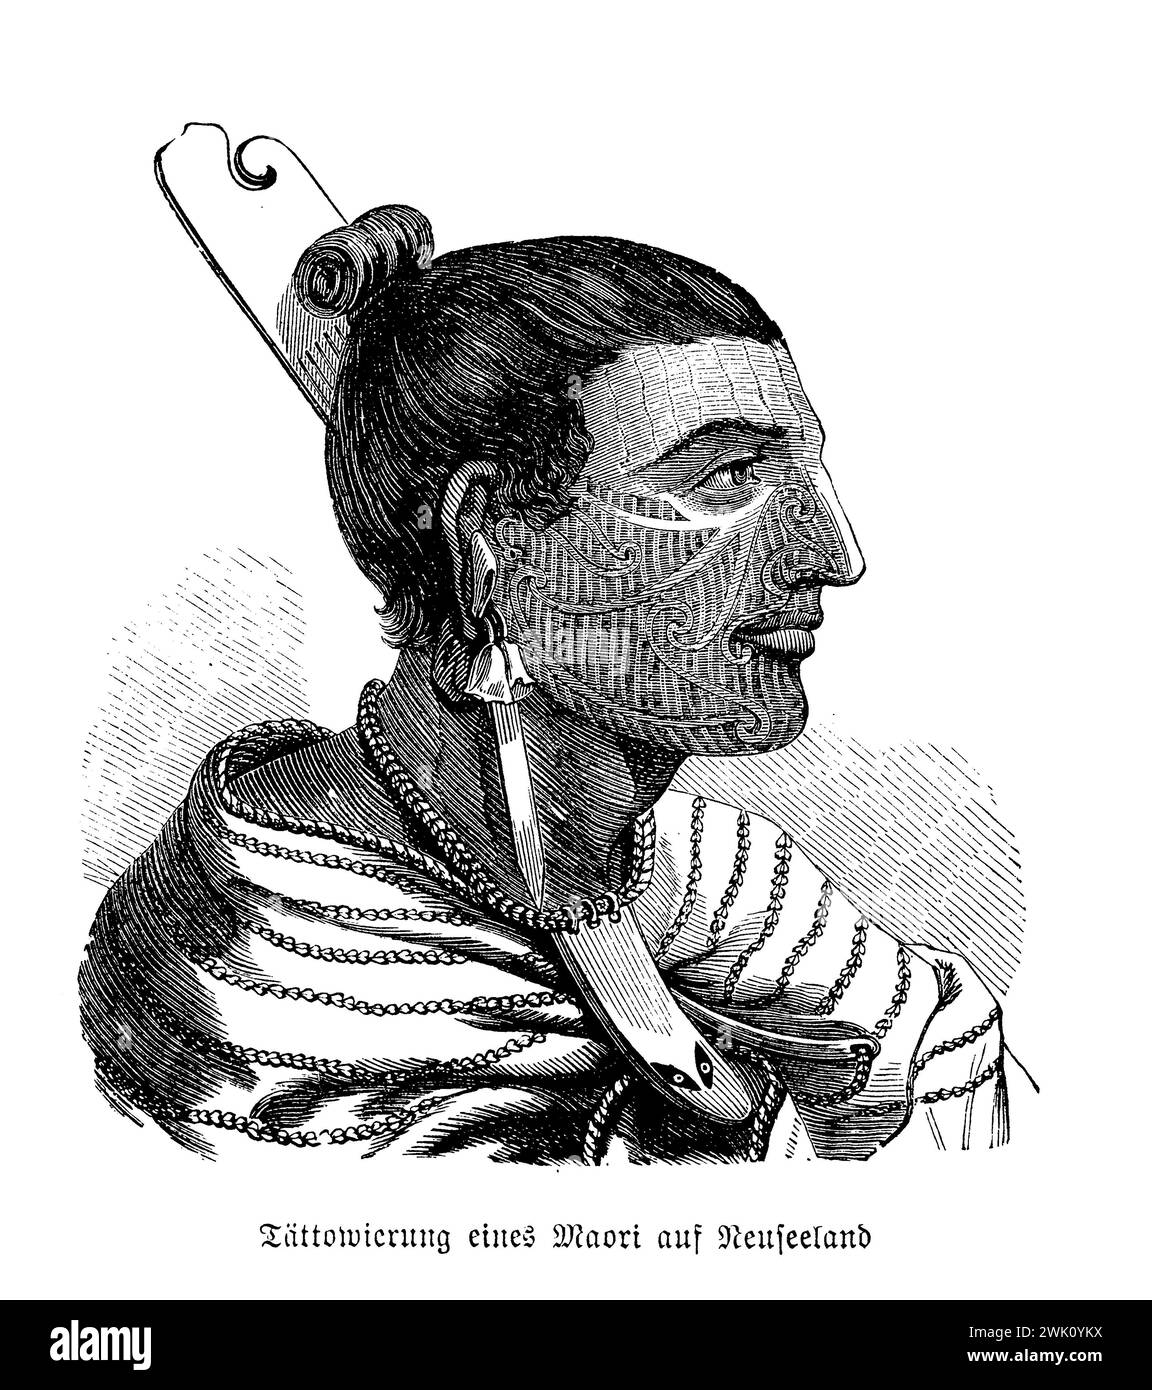 Ritratto della nativa Maori tatuata della nuova Zelanda, illustrazione del XIX secolo Foto Stock